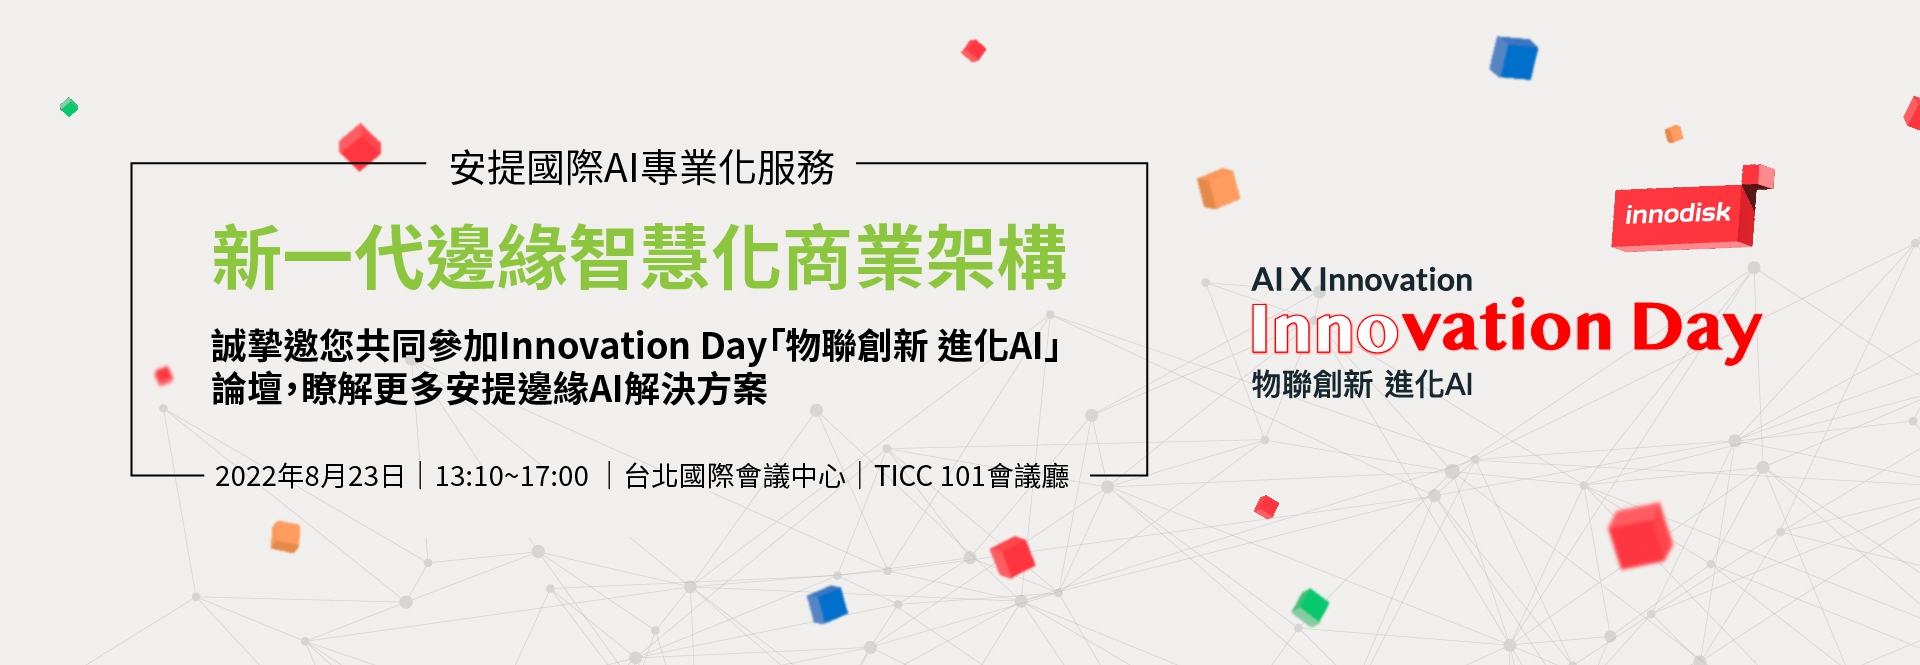 誠摯邀您共同參加Innovation Day「物聯創新 進化AI」論壇，瞭解更多安提邊緣AI解決方案